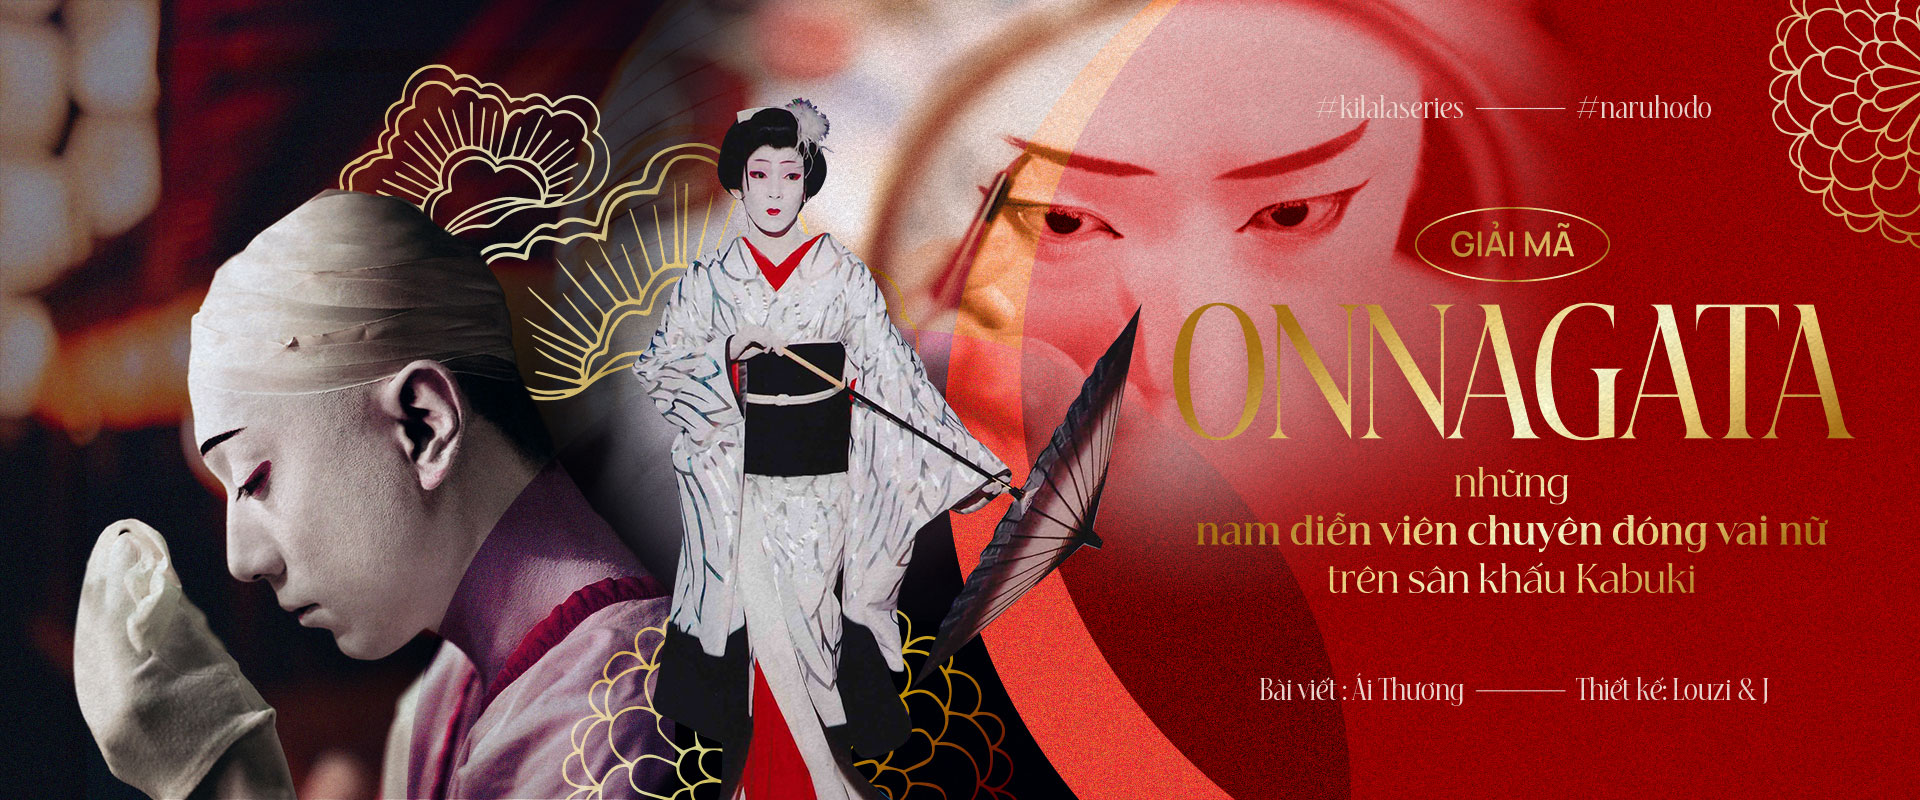 Giải mã Onnagata – những nam diễn viên chuyên đóng vai nữ trên sân khấu Kabuki.